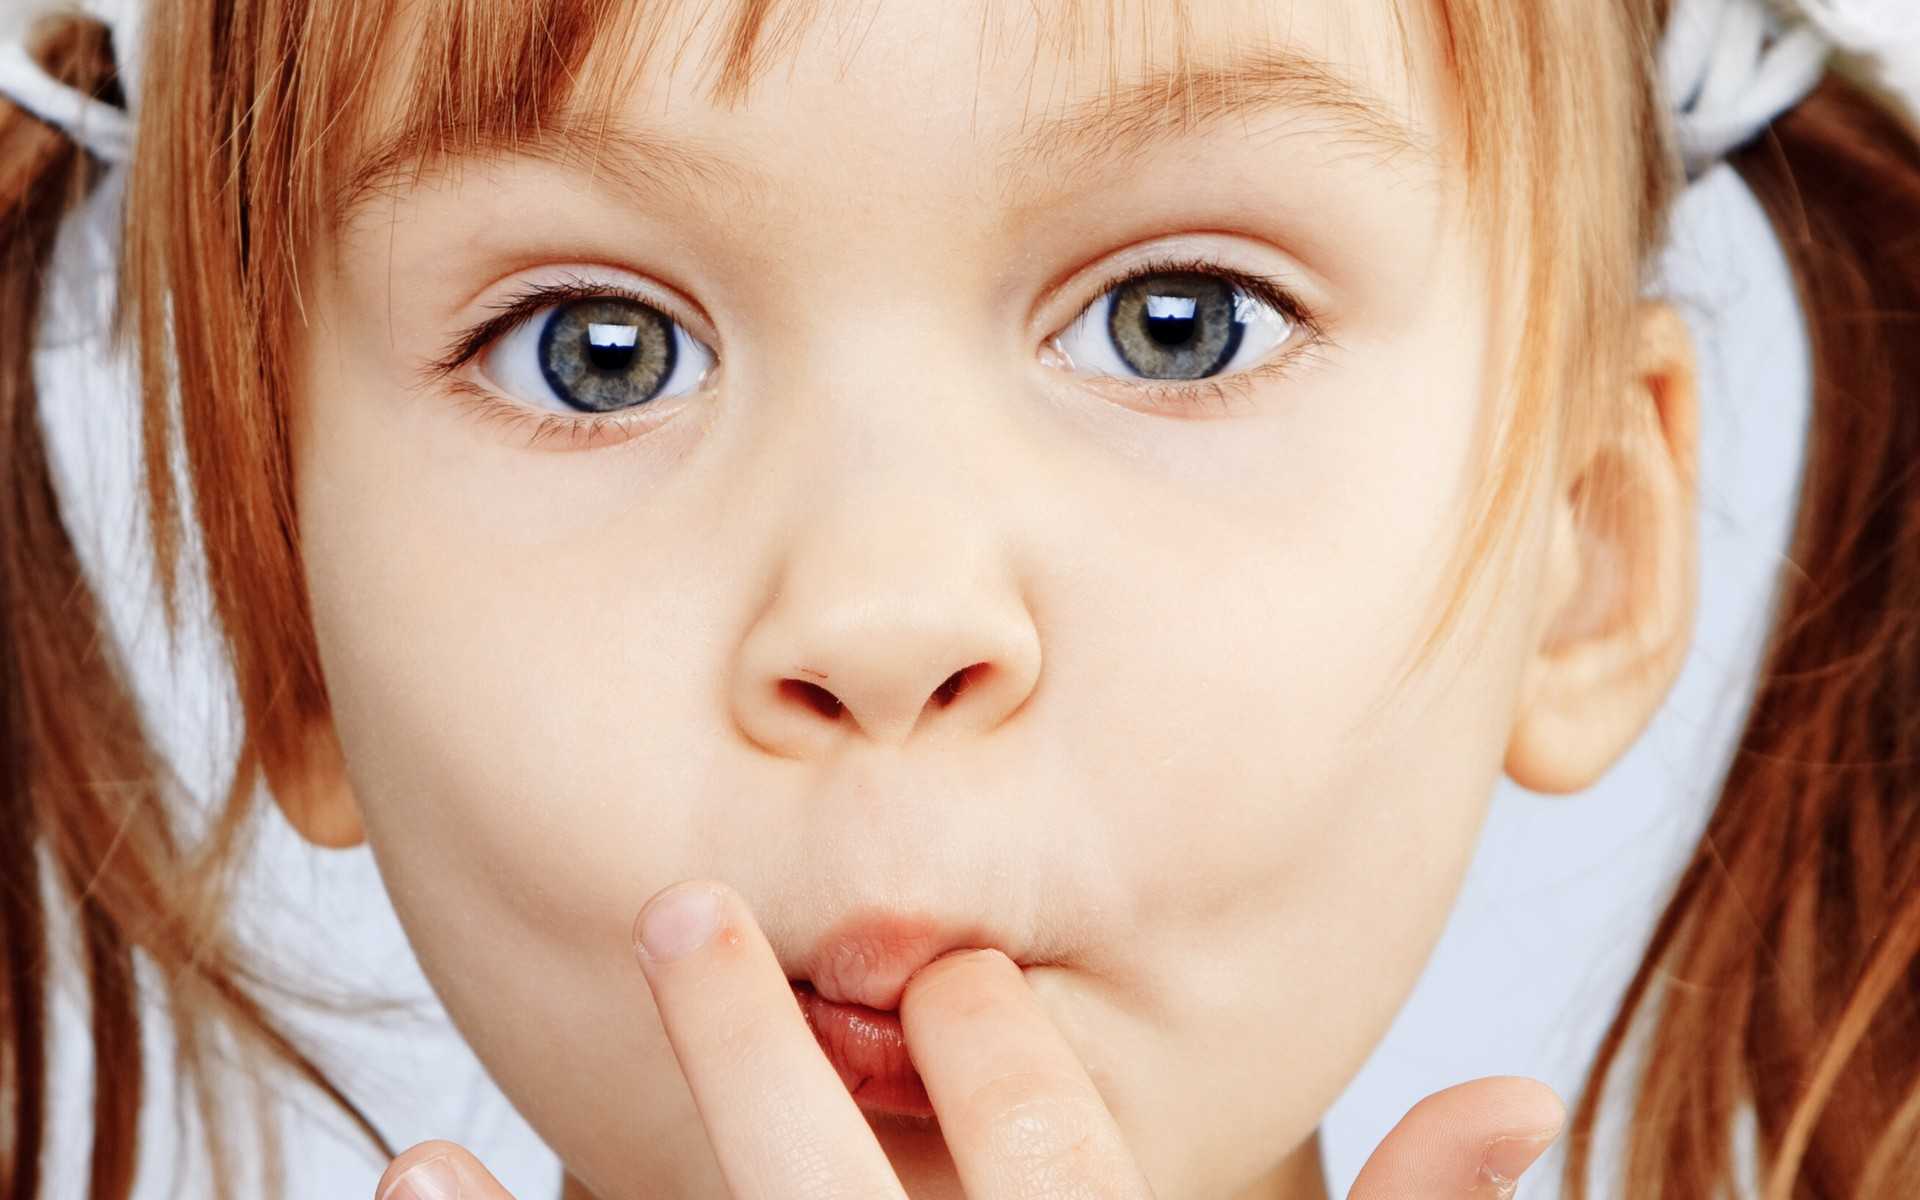 Ребенок шмыгает носом, а соплей нет - причины, что делать, советы доктора